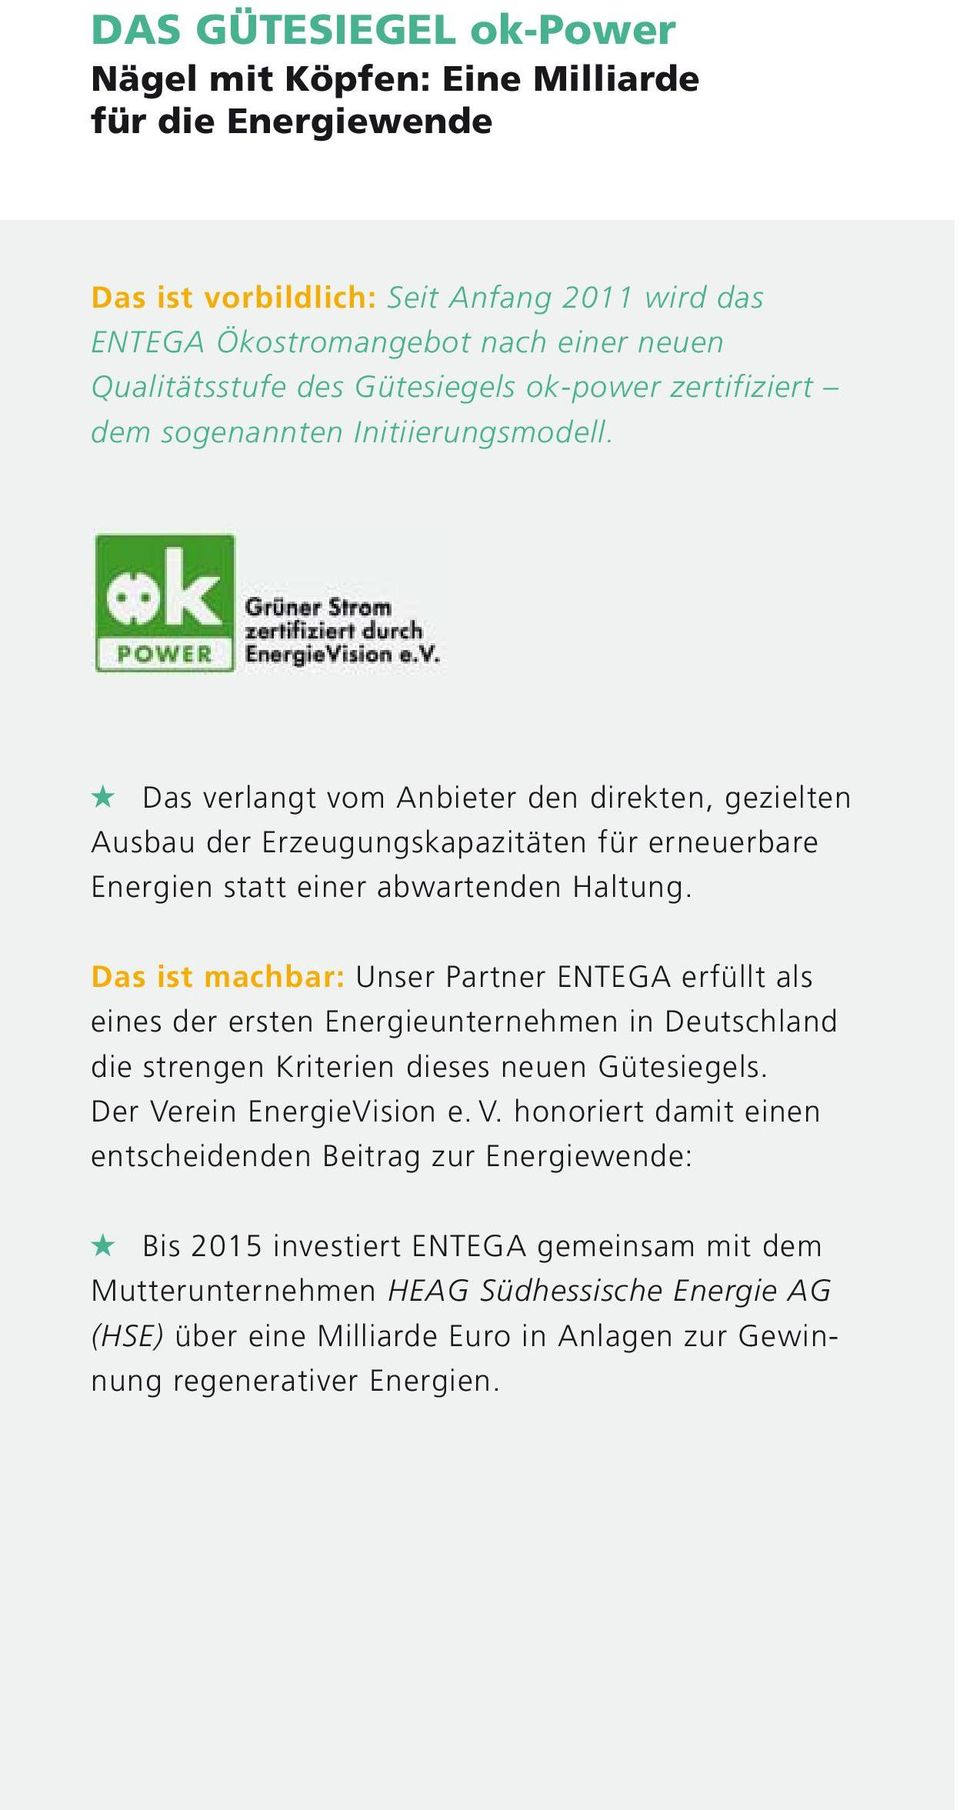 Das ist machbar: Unser Partner ENTEGA erfüllt als eines der ersten Energieunternehmen in Deutschland die strengen Kriterien dieses neuen Gütesiegels. Der Ve